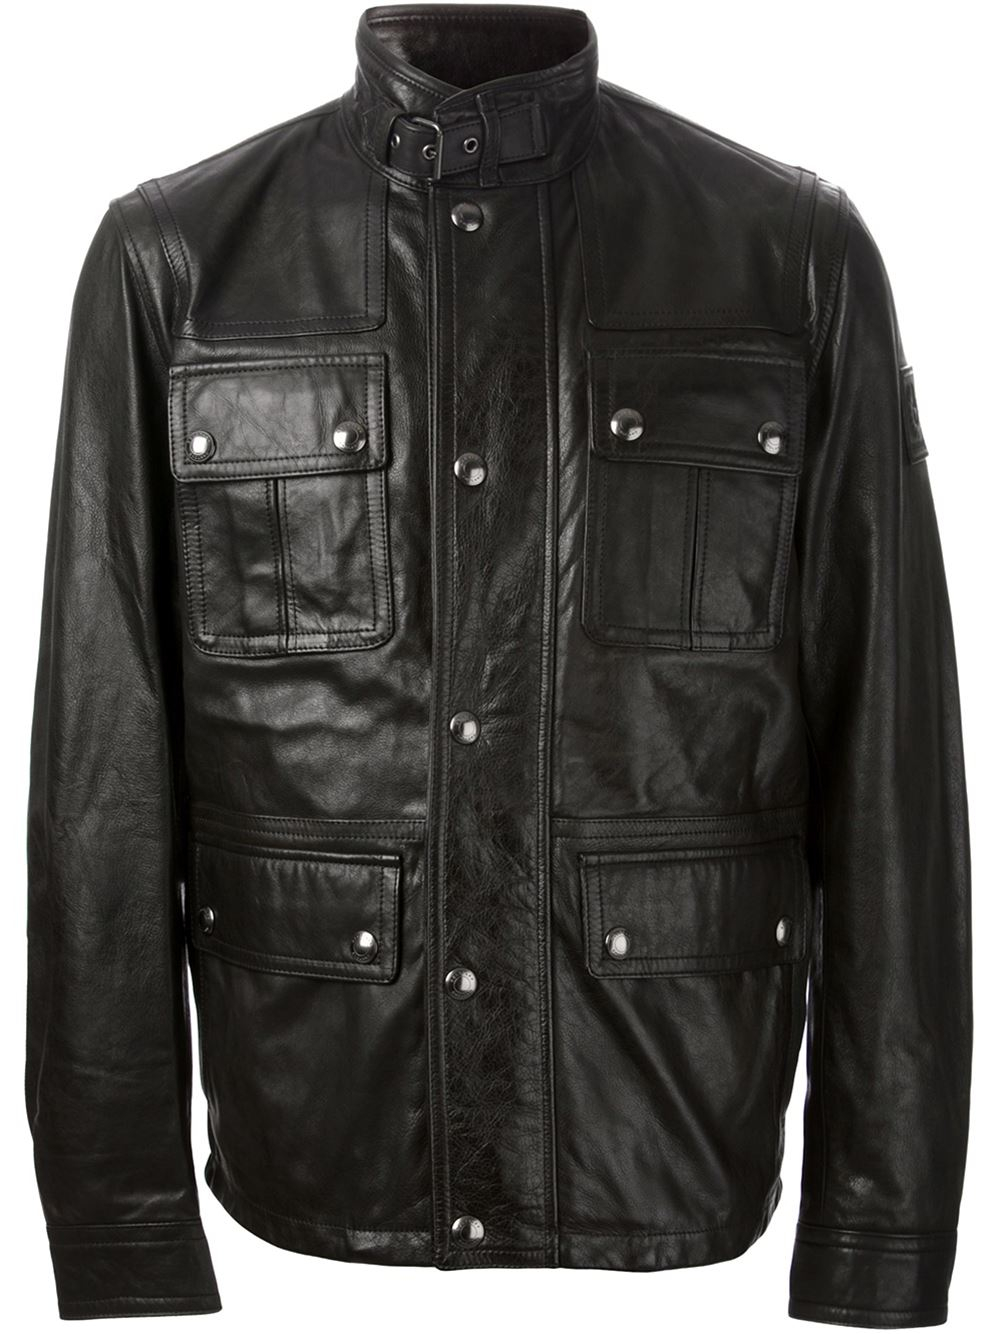 Belstaff 'Maple' Biker Jacket in Black for Men - Lyst